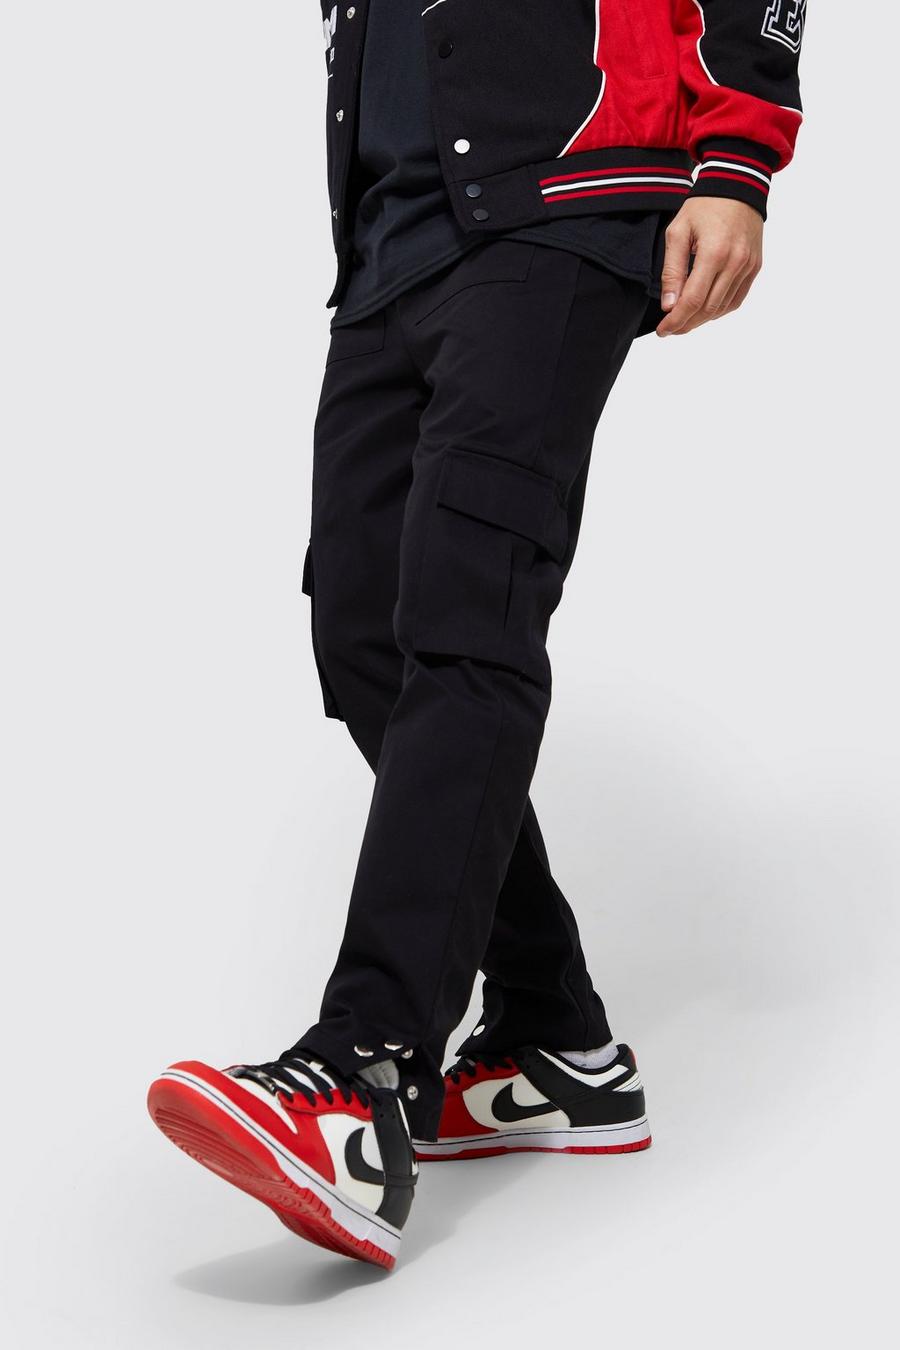 Pantaloni Cargo Slim Fit con tasche e bottoni a pressione, Black nero